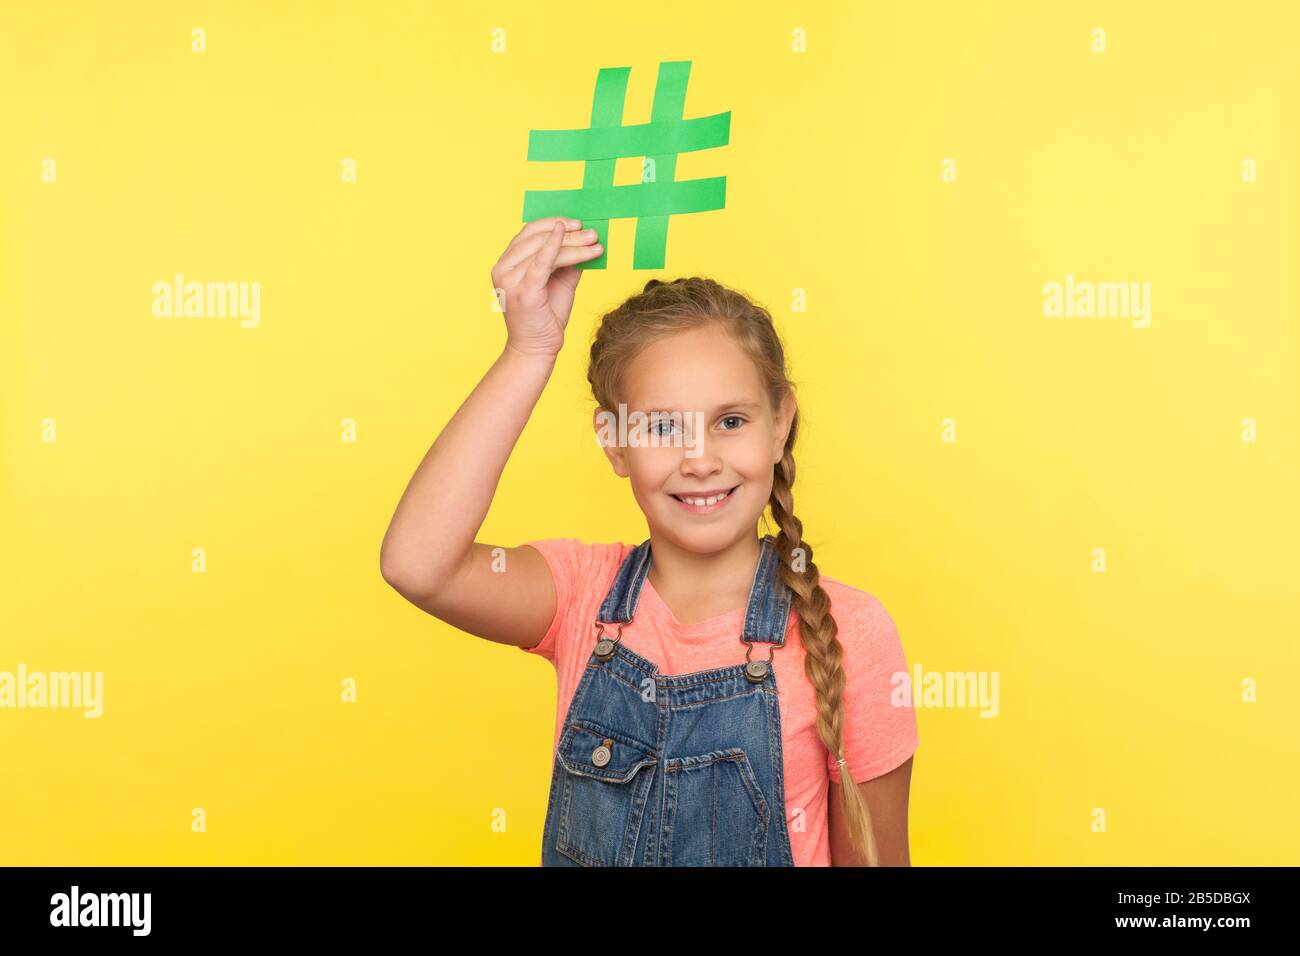 Virale Webinhalte, Internetforum. Porträt des glücklichen kleinen Mädchens mit Geflecht in Denim-Overalls, das Hashtag-Symbol über Kopf hält und lächelt, wirbt Stockfoto